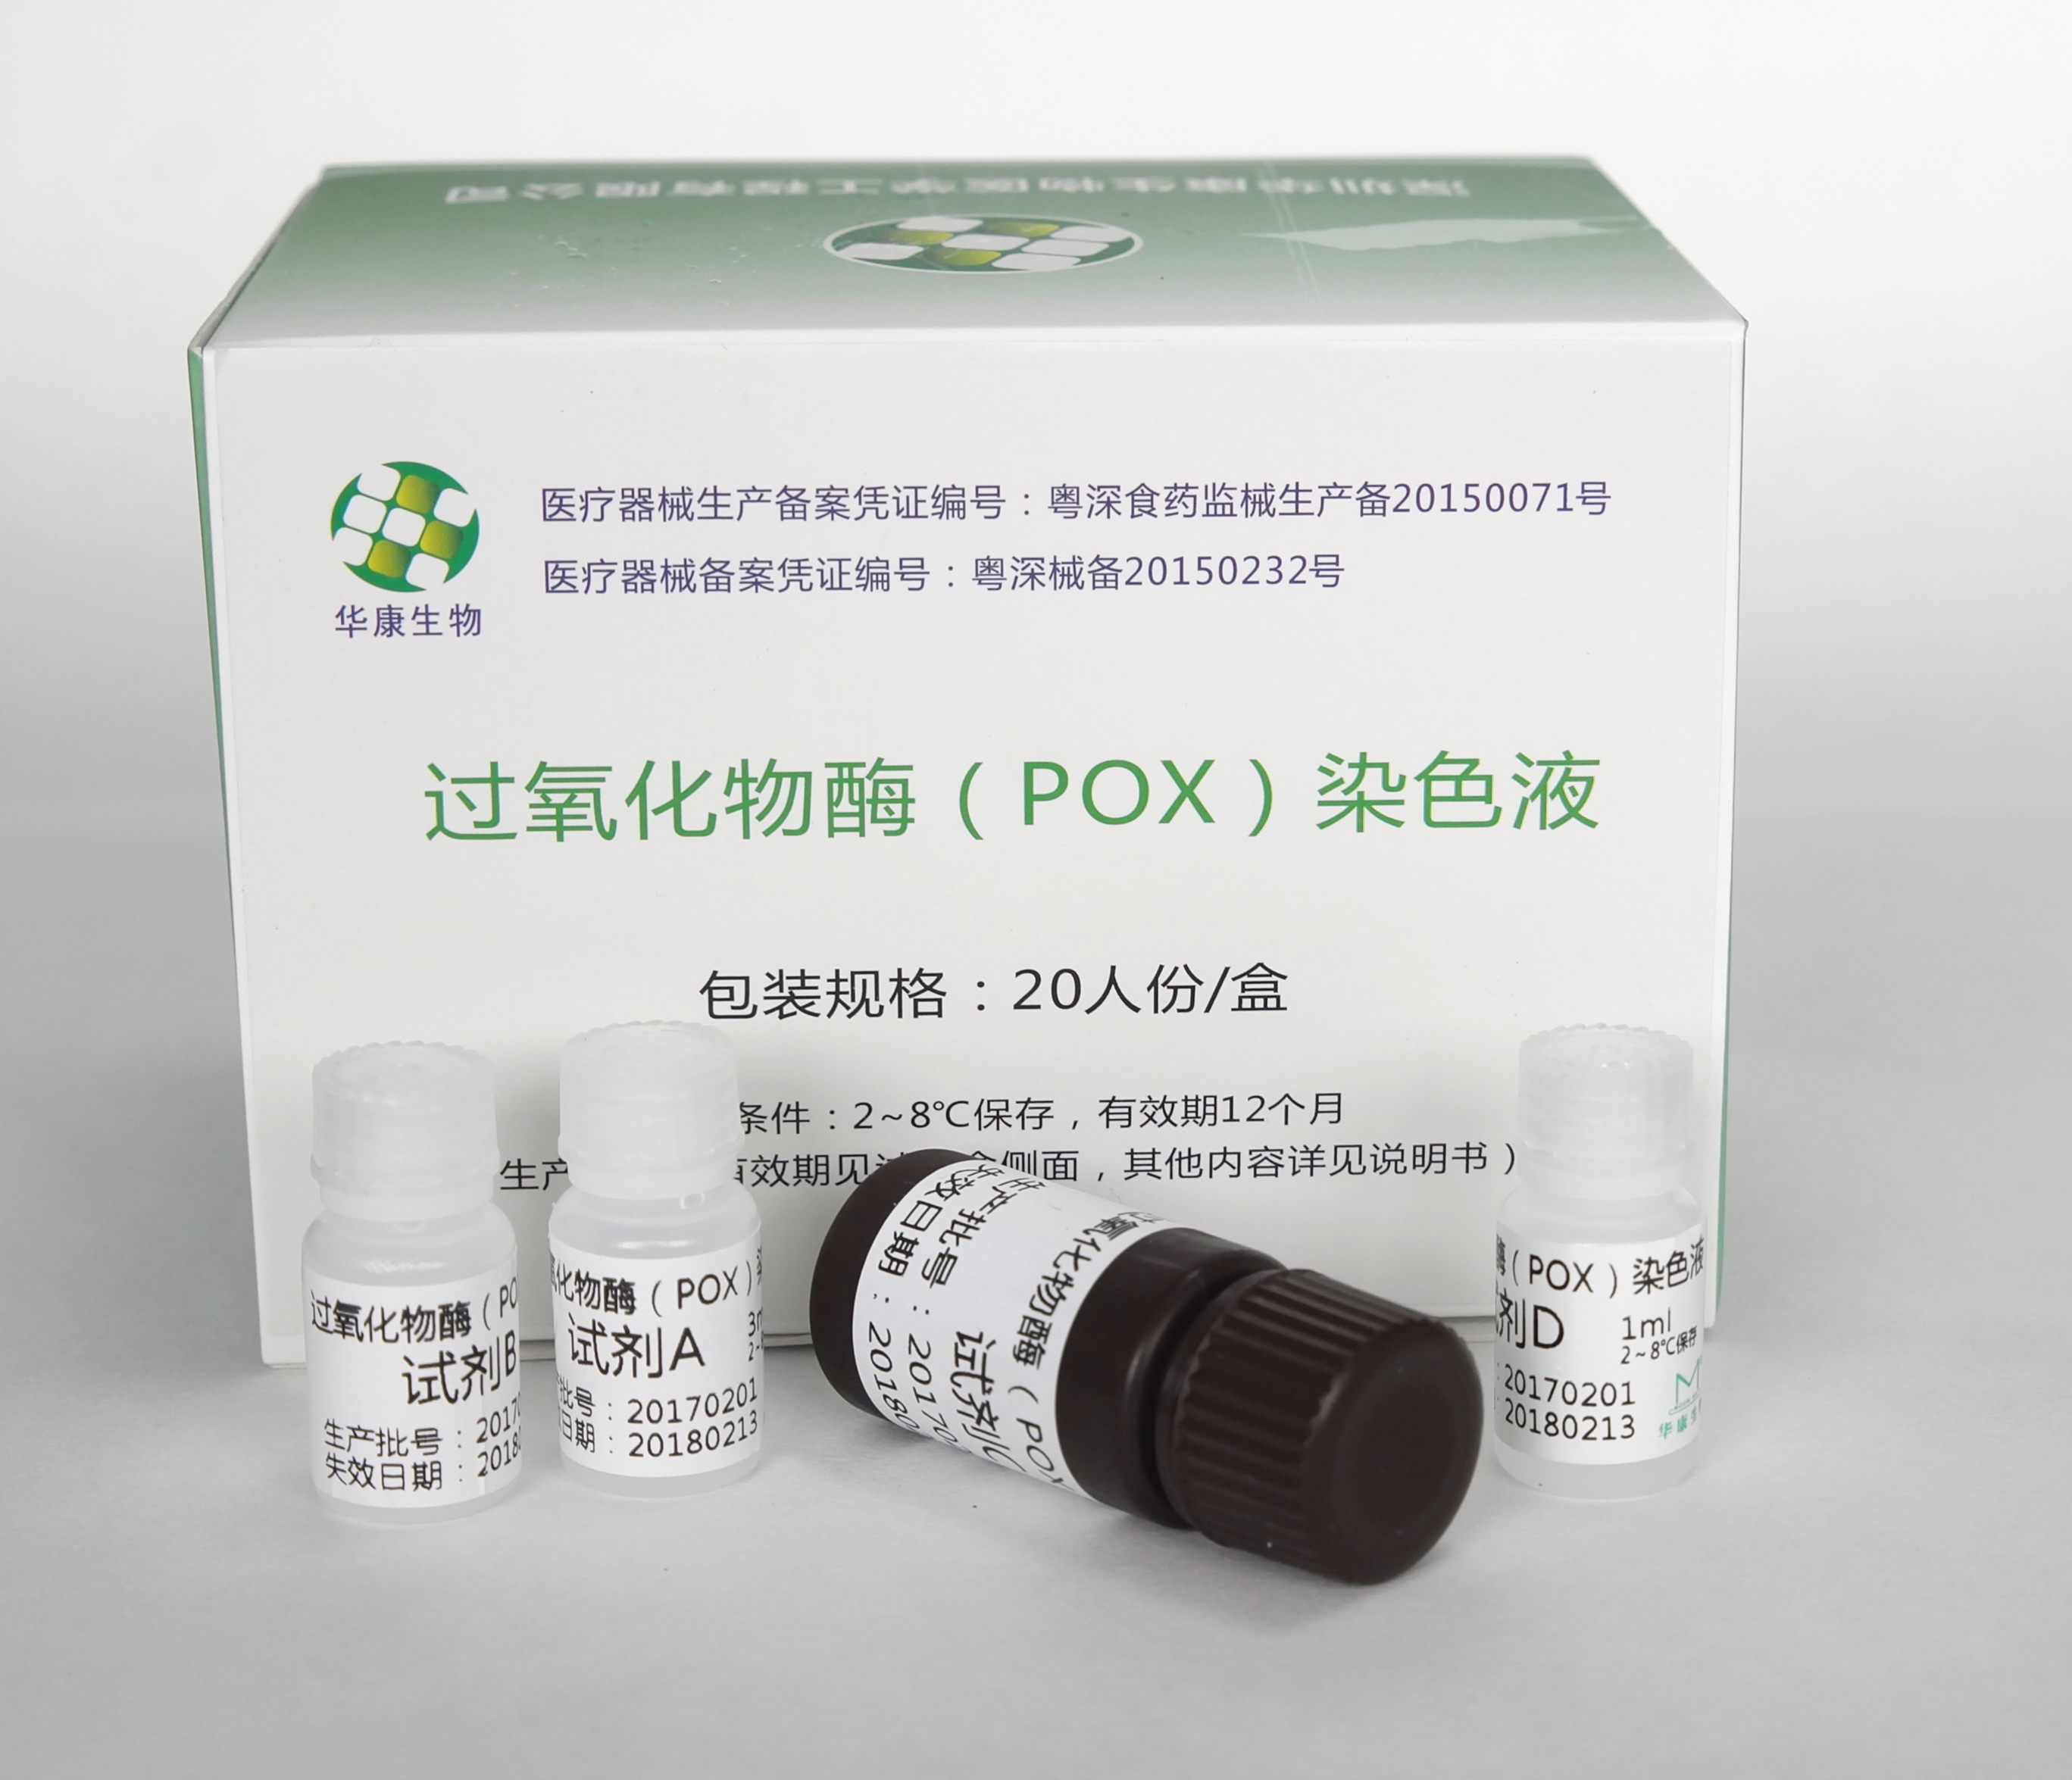 【华康】过氧化物酶(POX)染色液 Peroxidase Staining